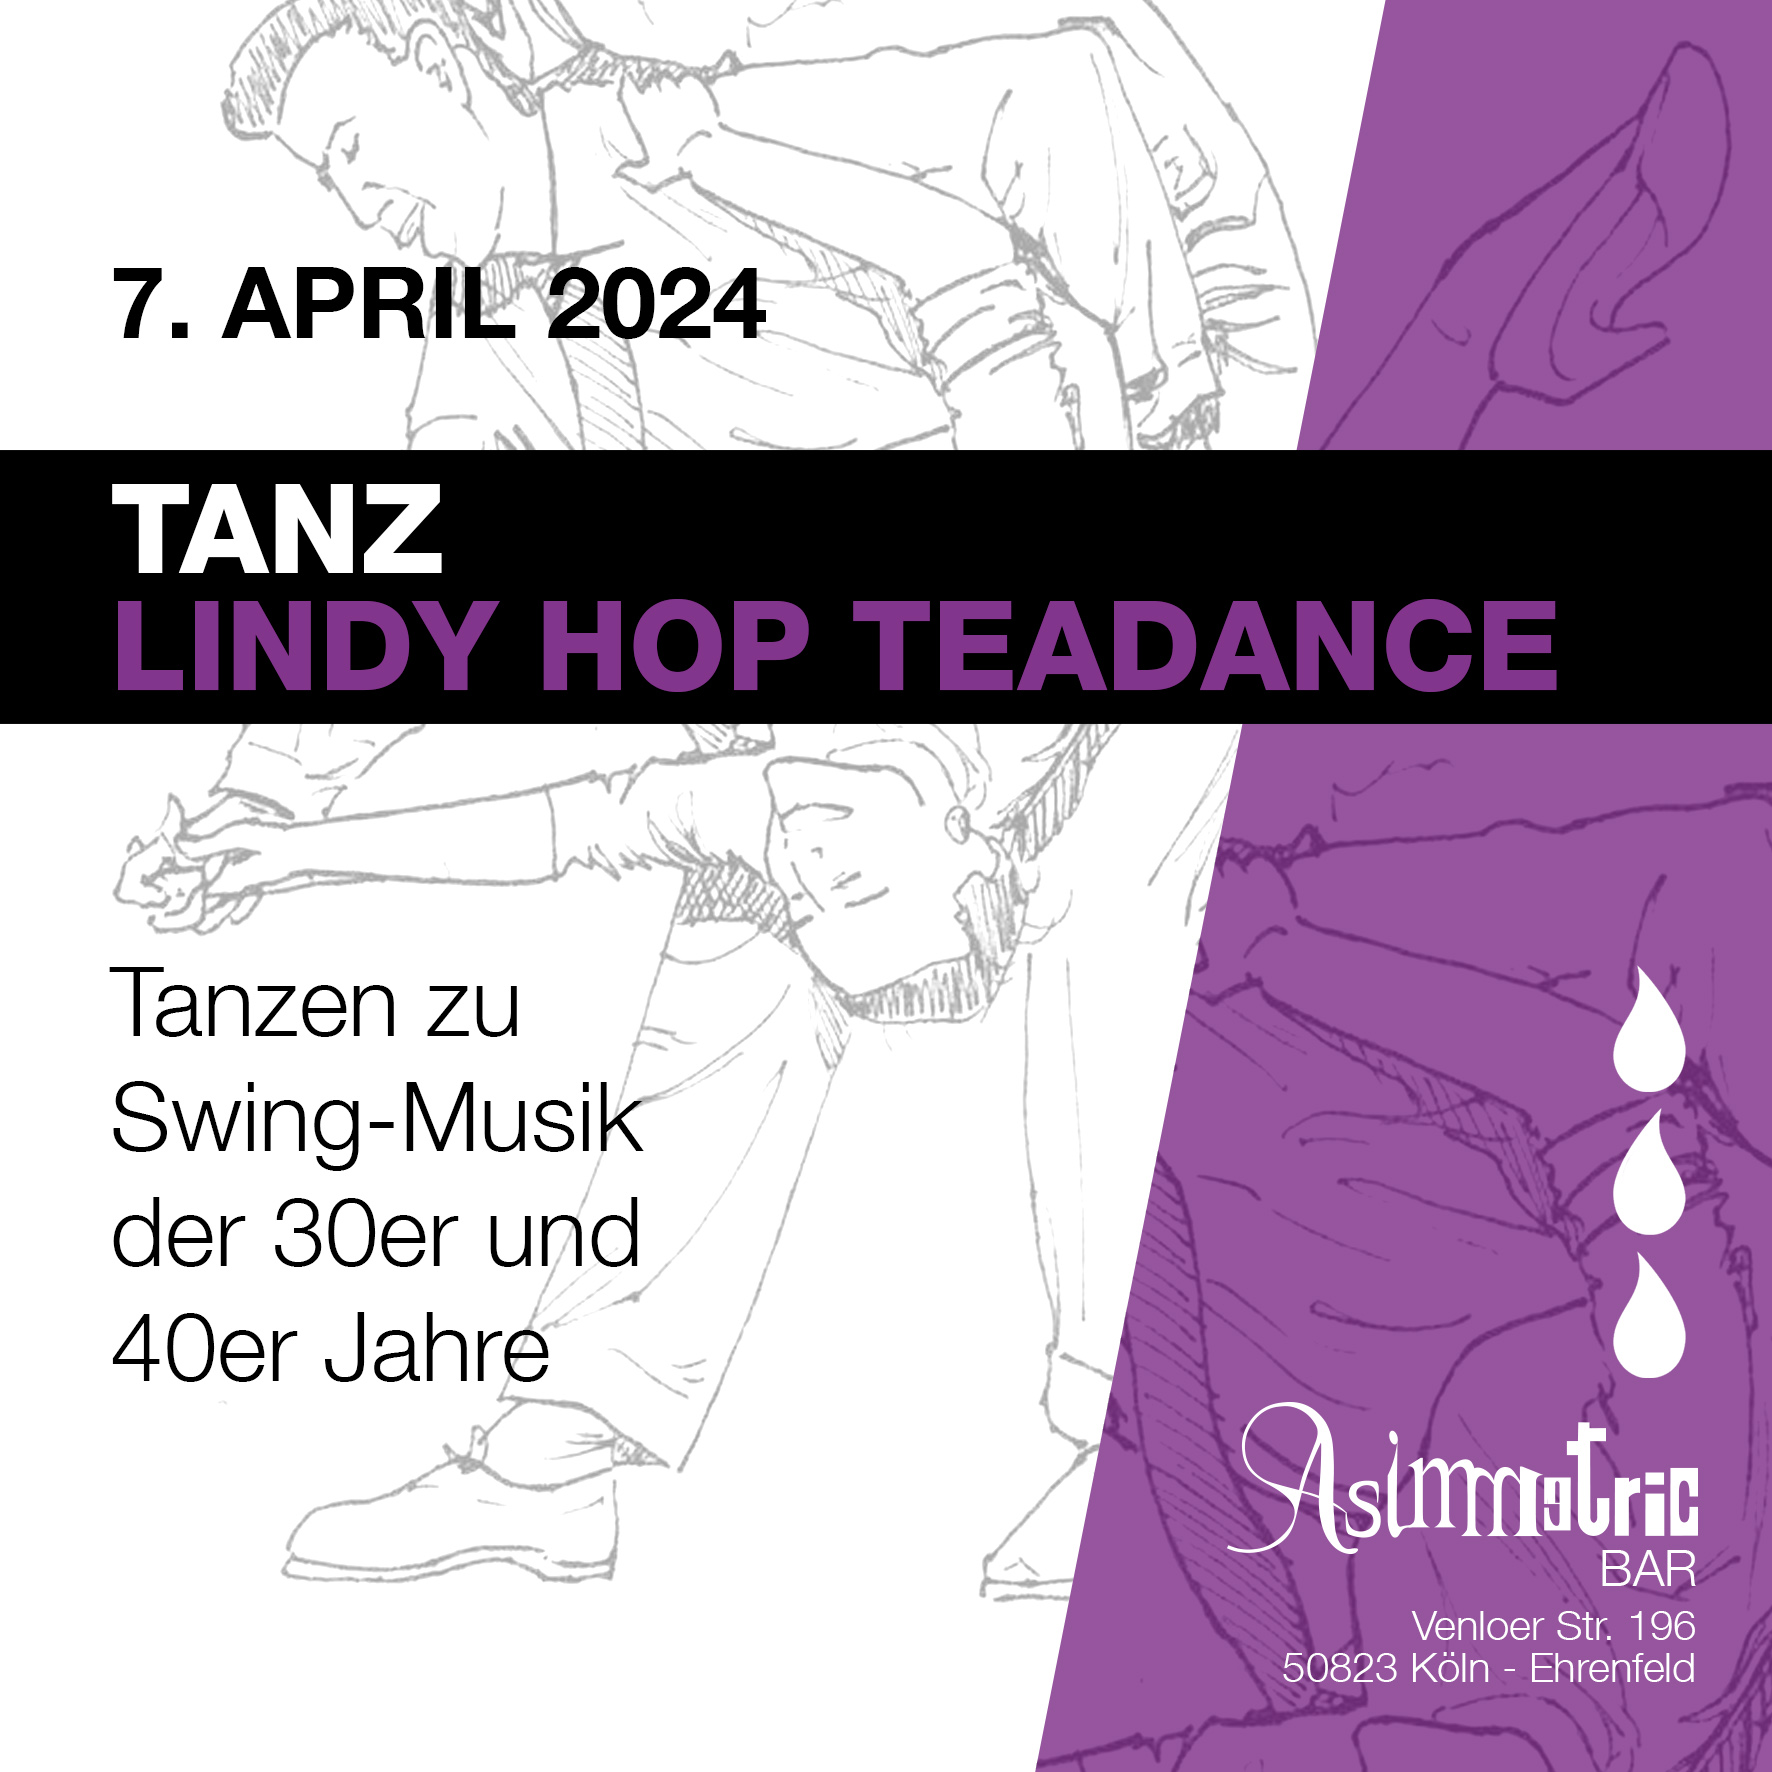 Lindy Hop Teadance - Asimmetric Bar - 7.4.2024